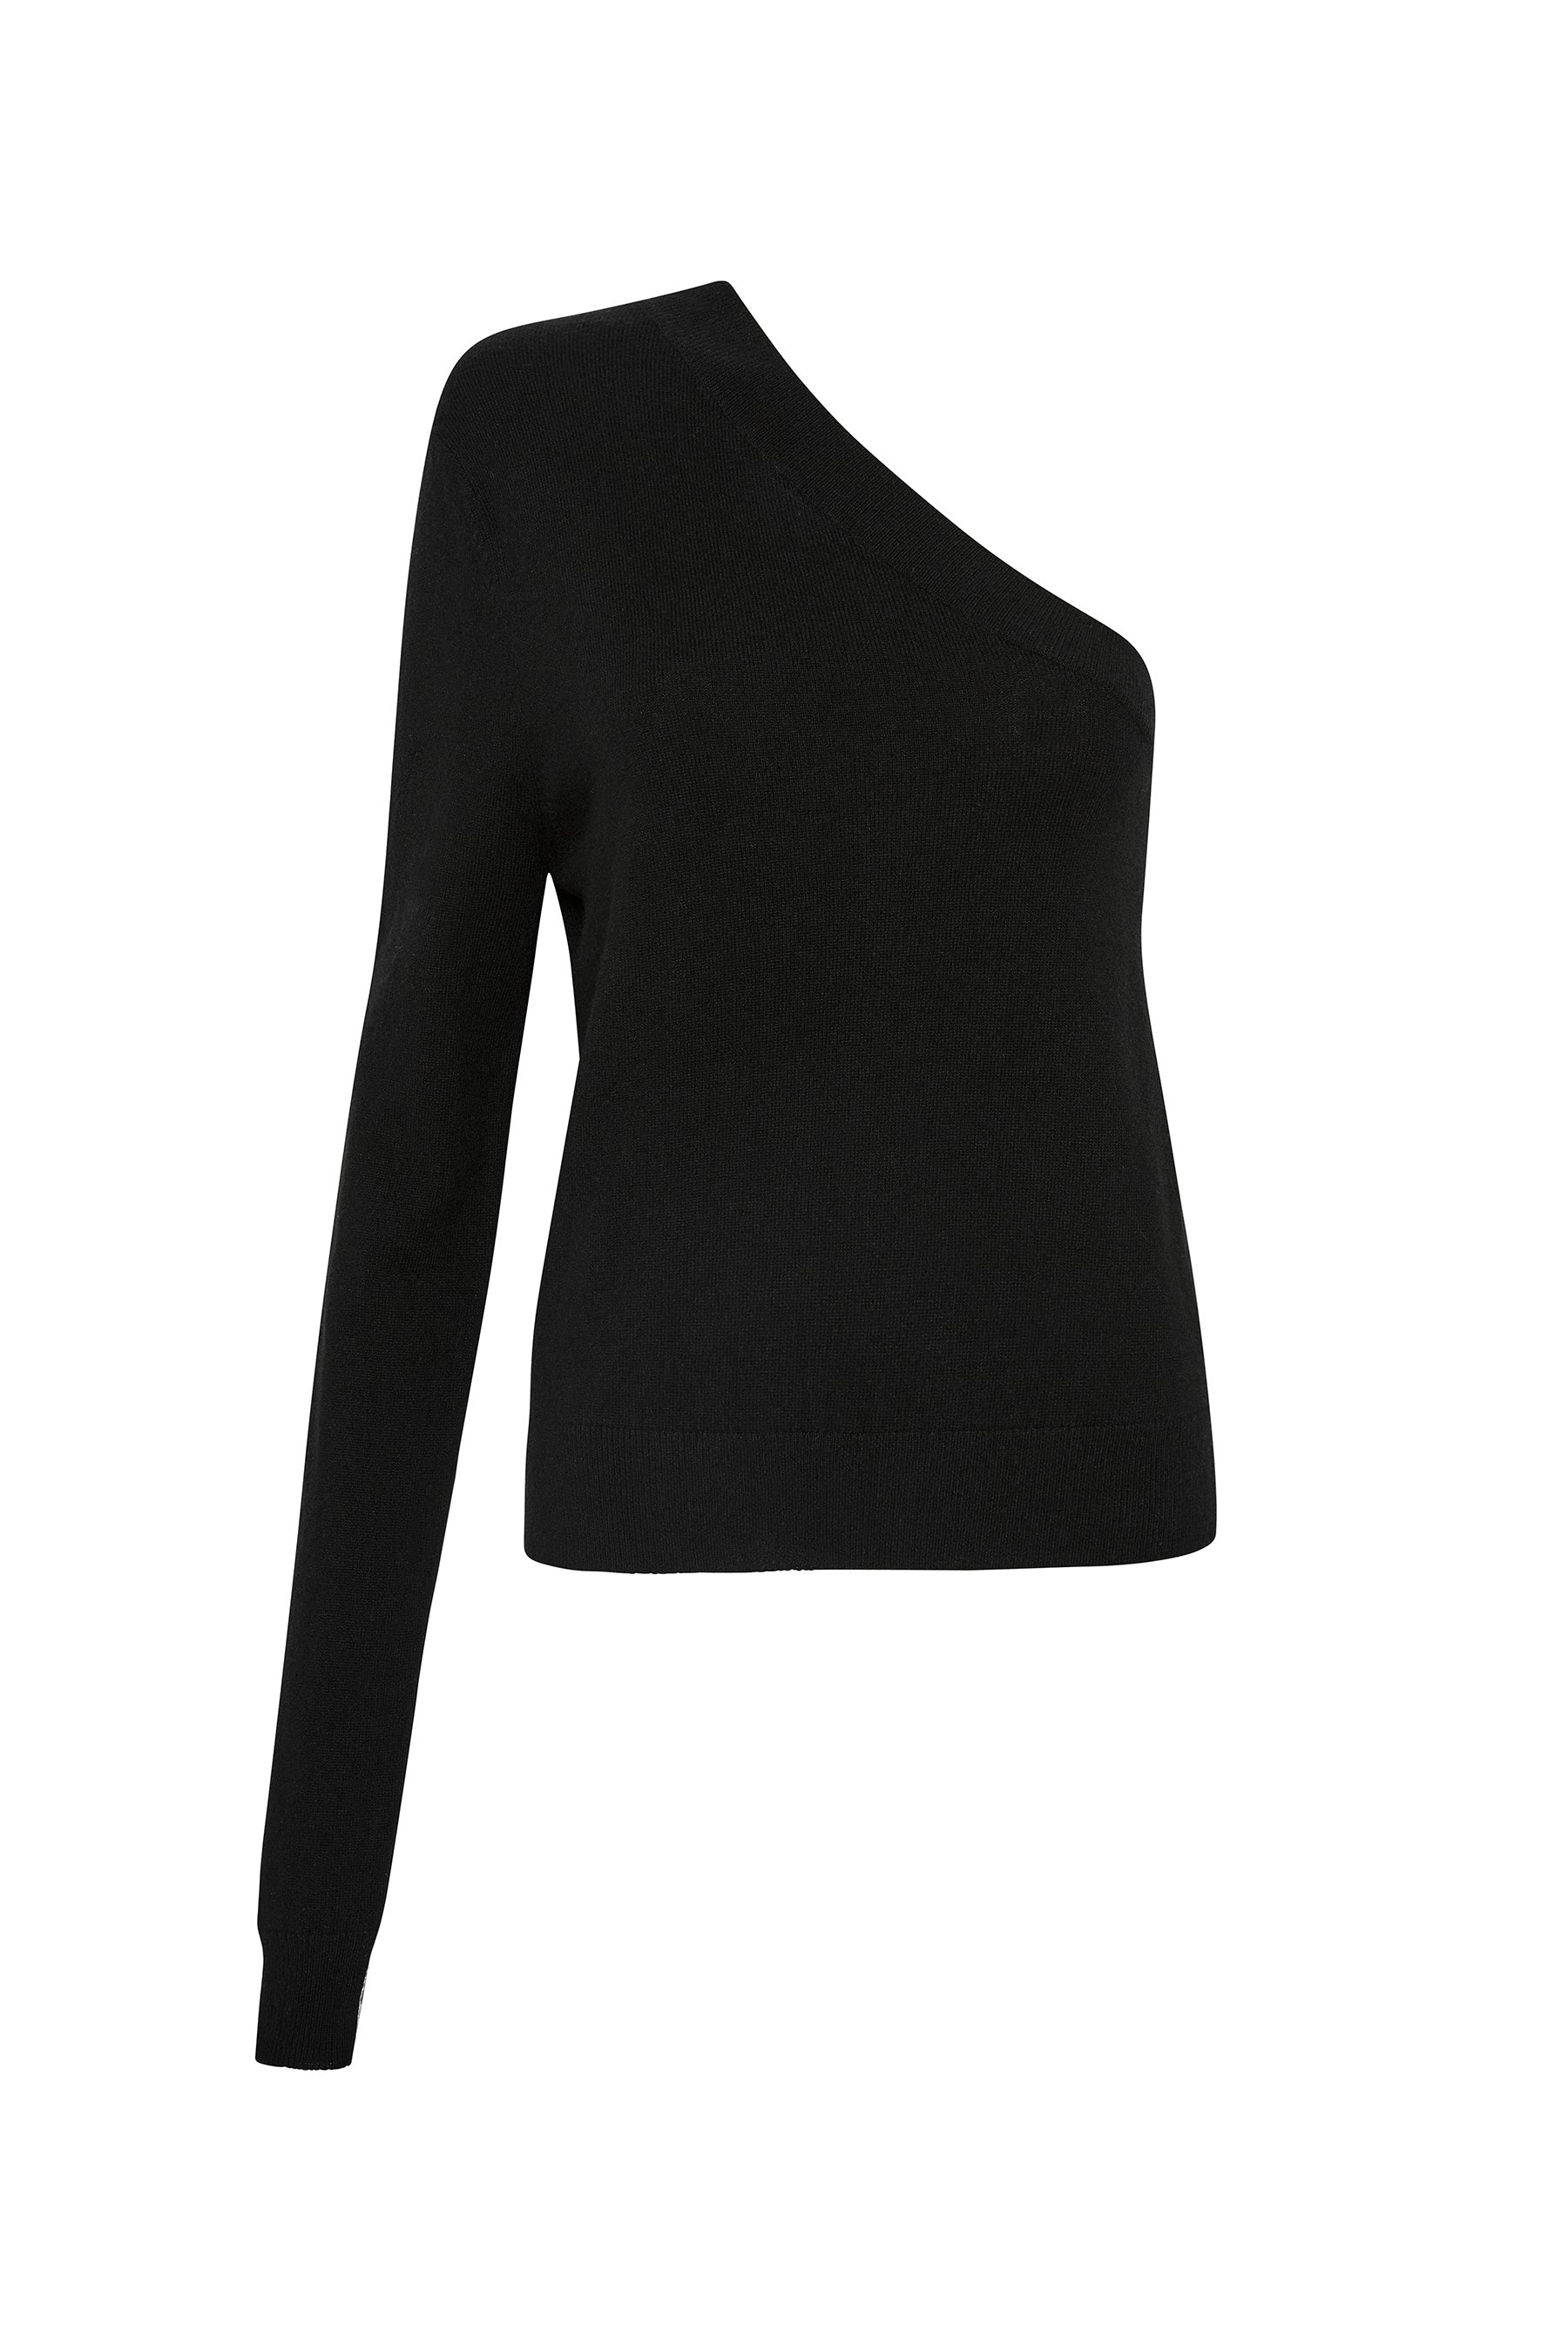 One Shoulder Split Side Knit Top in Black